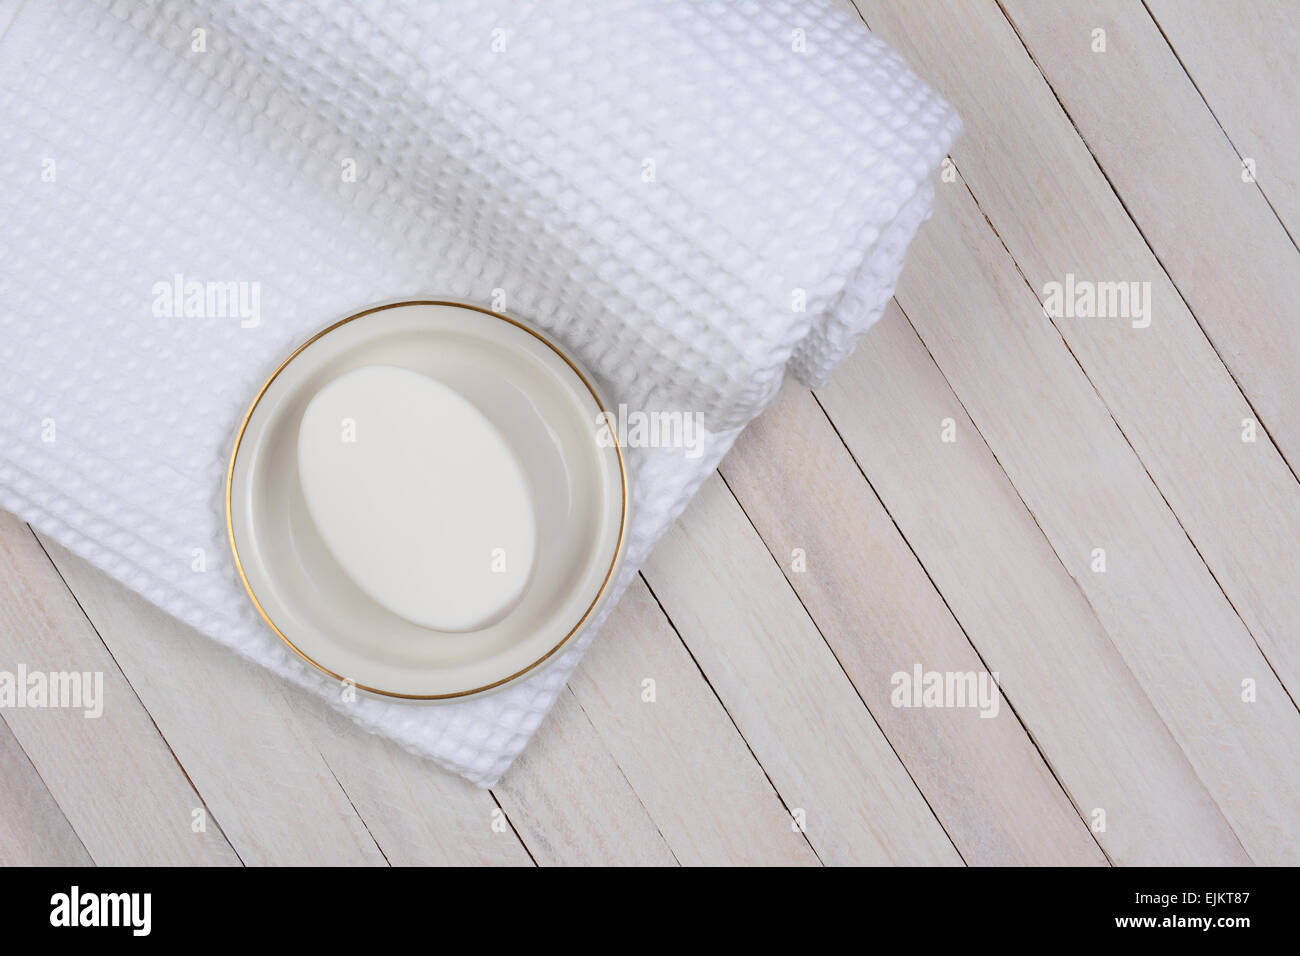 Hohen Winkel Schuss von einem weißen Badetuch auf einem weiß getünchten Holzoberfläche. Auf dem Handtuch ist ein Stück Seife in einer Petrischale. Stockfoto